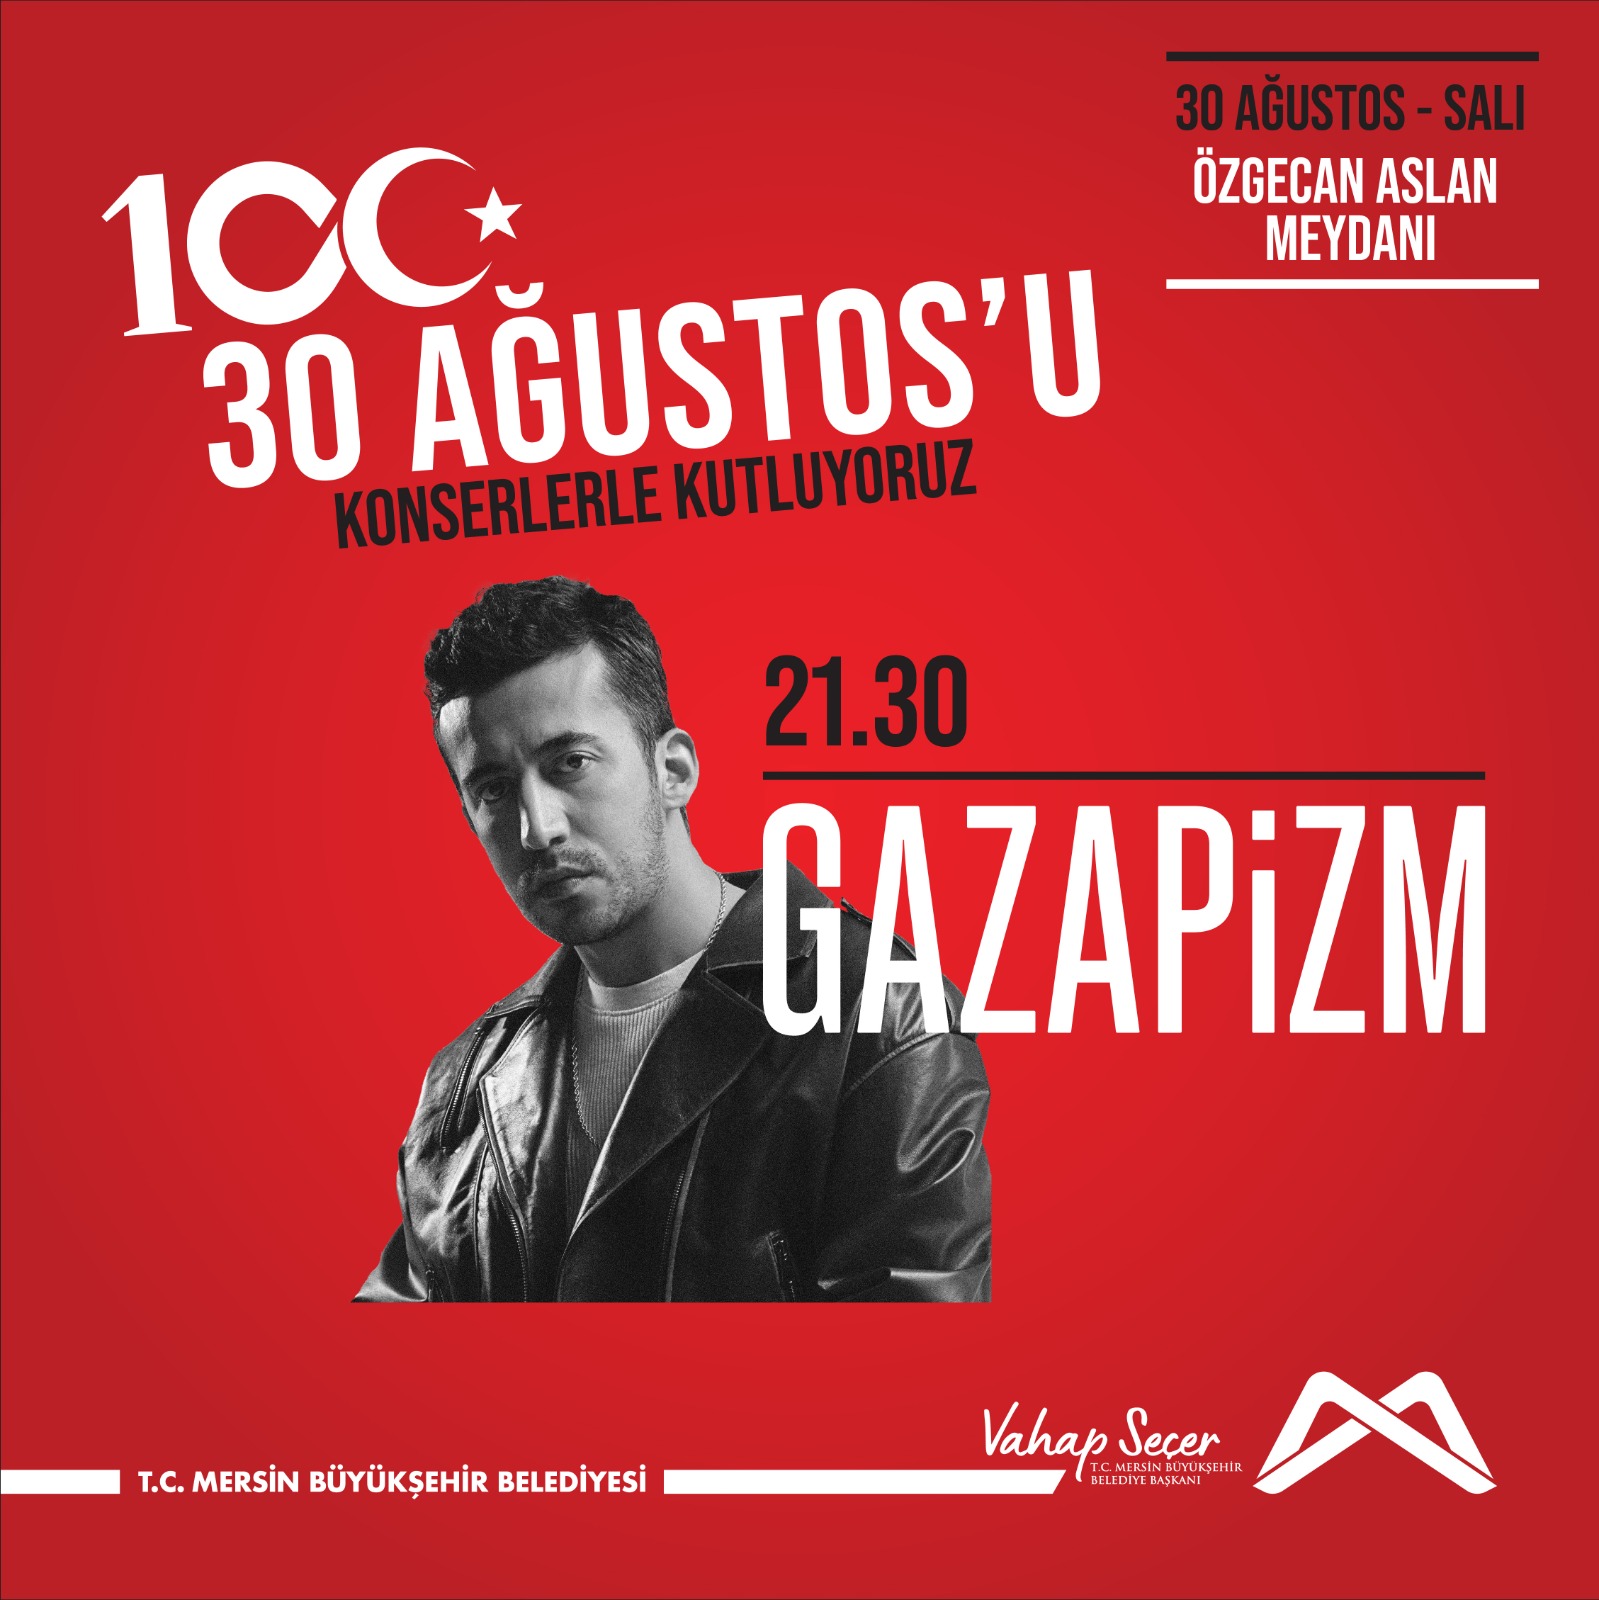 30 Ağustos zaferinin 100. yılında Gazapizm konserinde buluşalım!